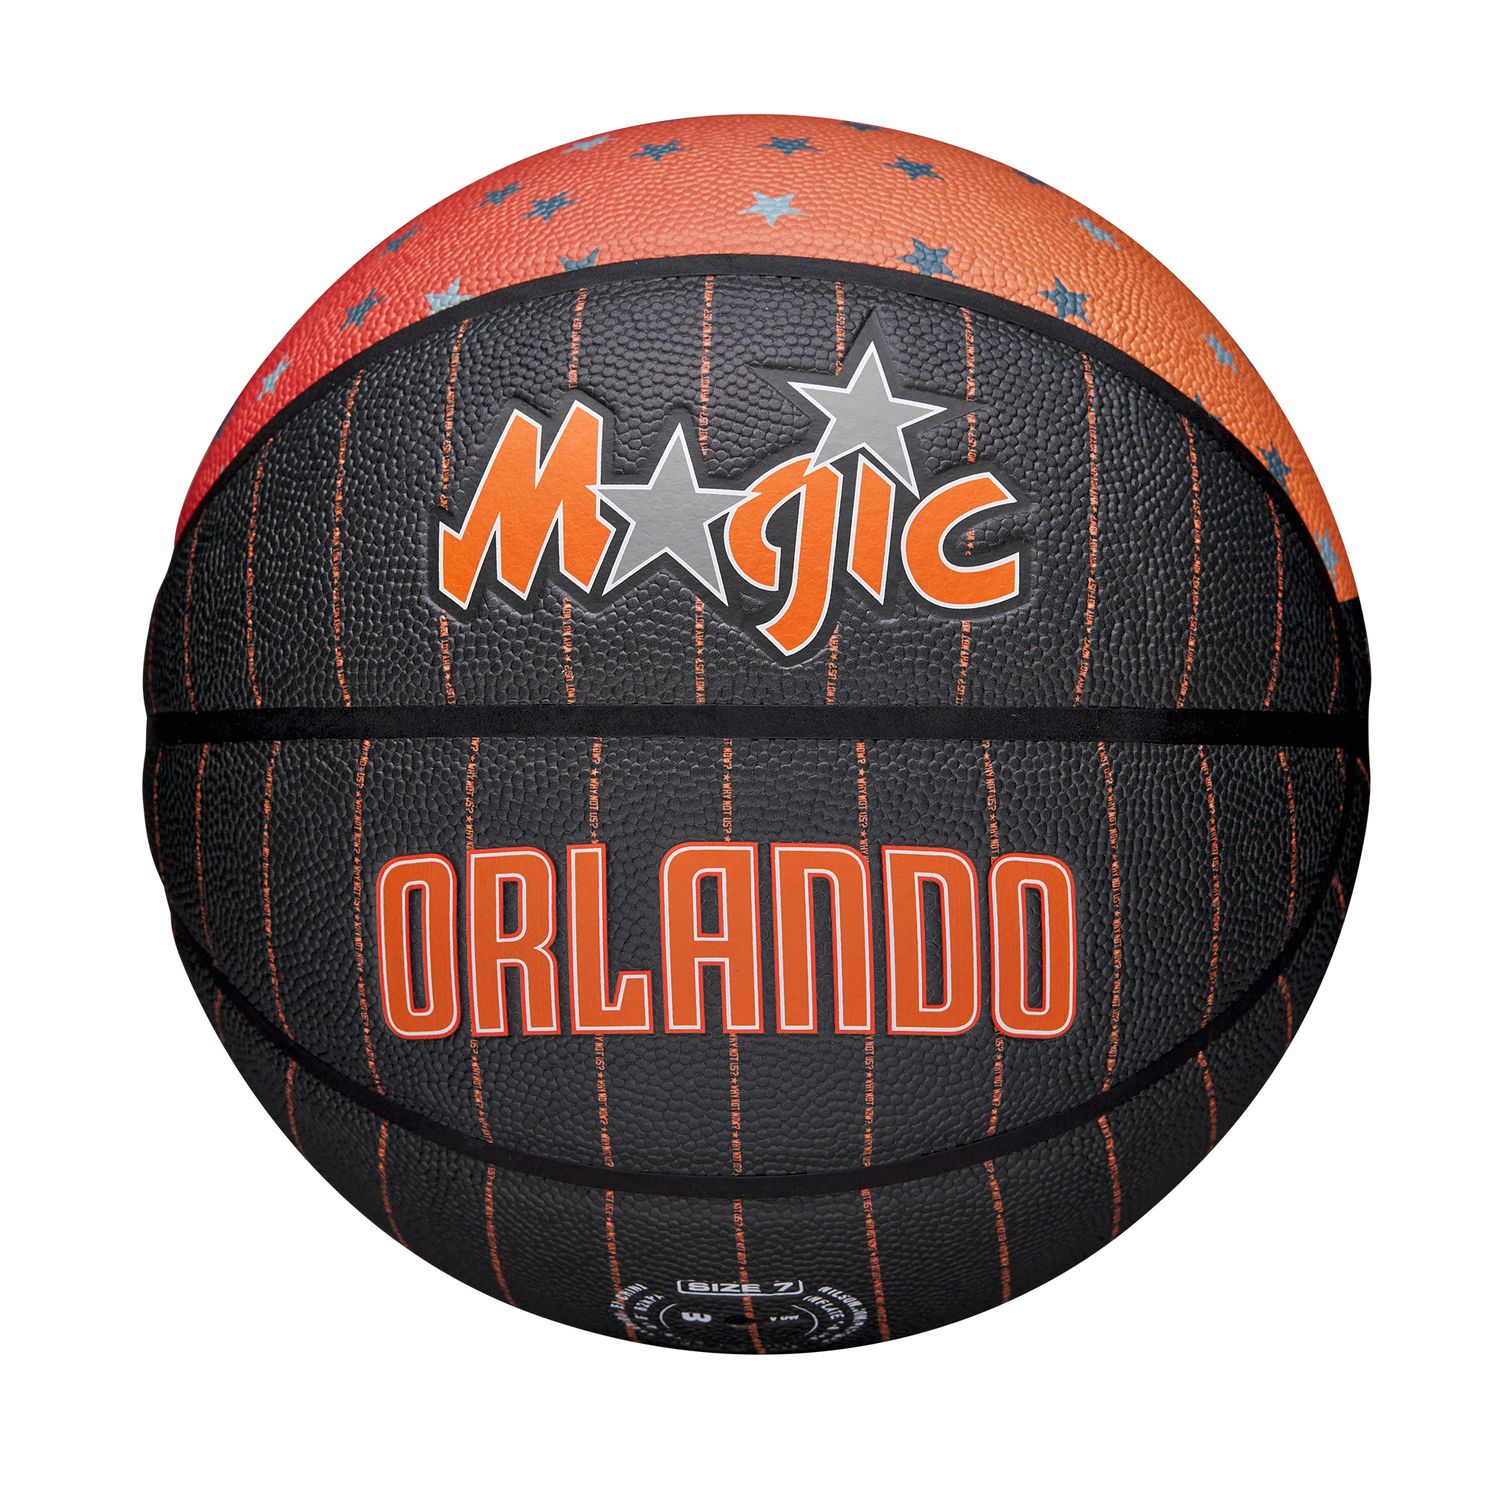 Wilson Orlando Magic NBA 75th City Collector Basketball